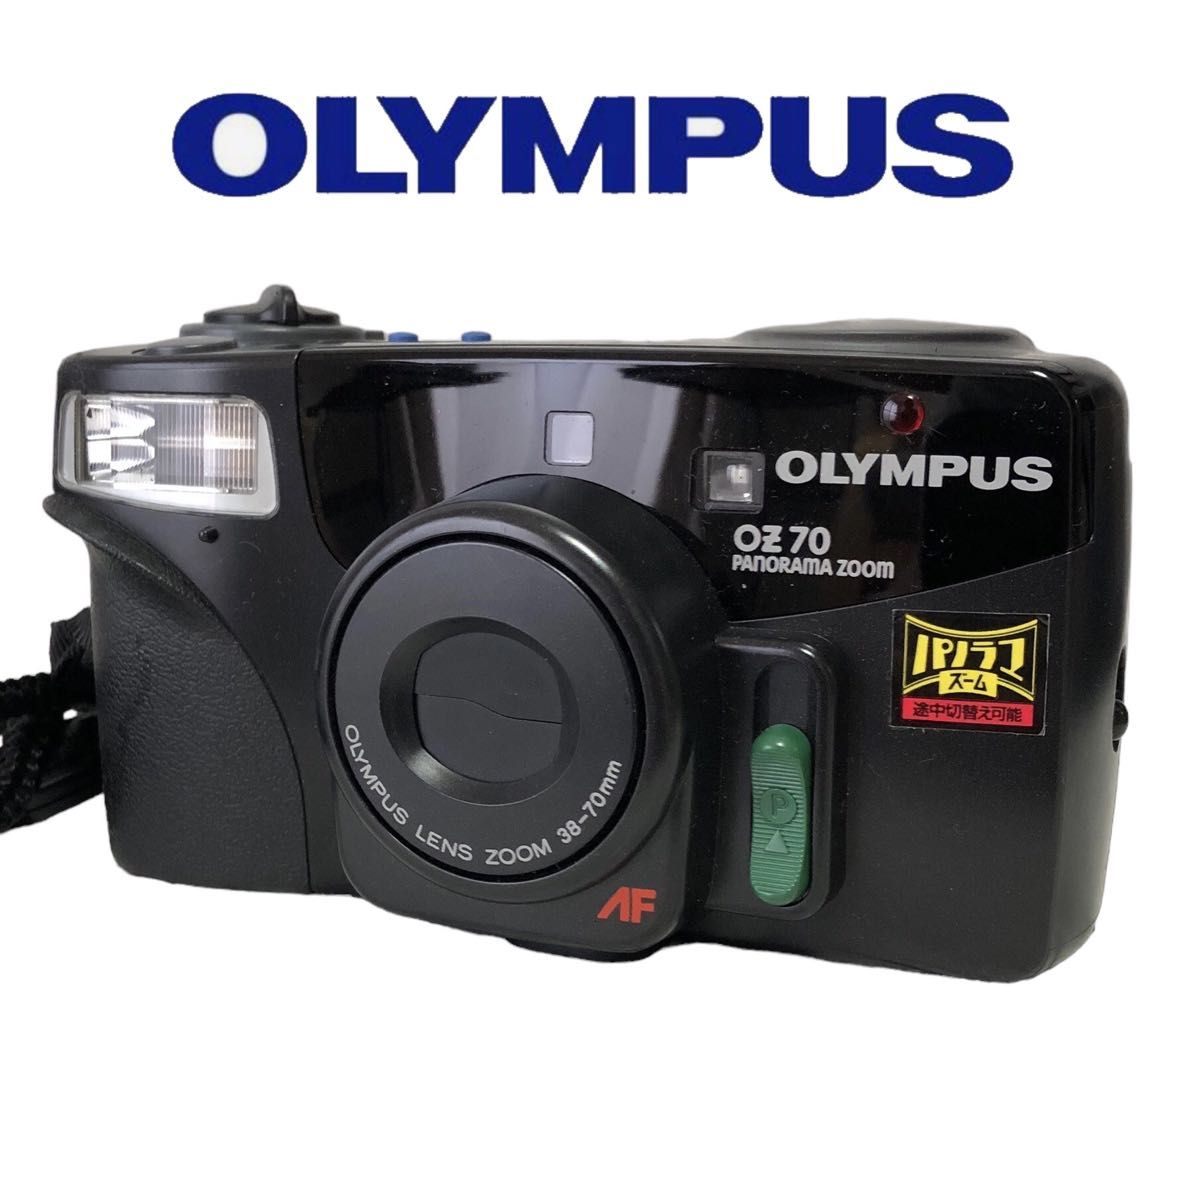 ★ 動作確認済 OLYMPUS オリンパス OZ70 PANORAMA ZOOM コンパクトカメラ フィルムカメラ